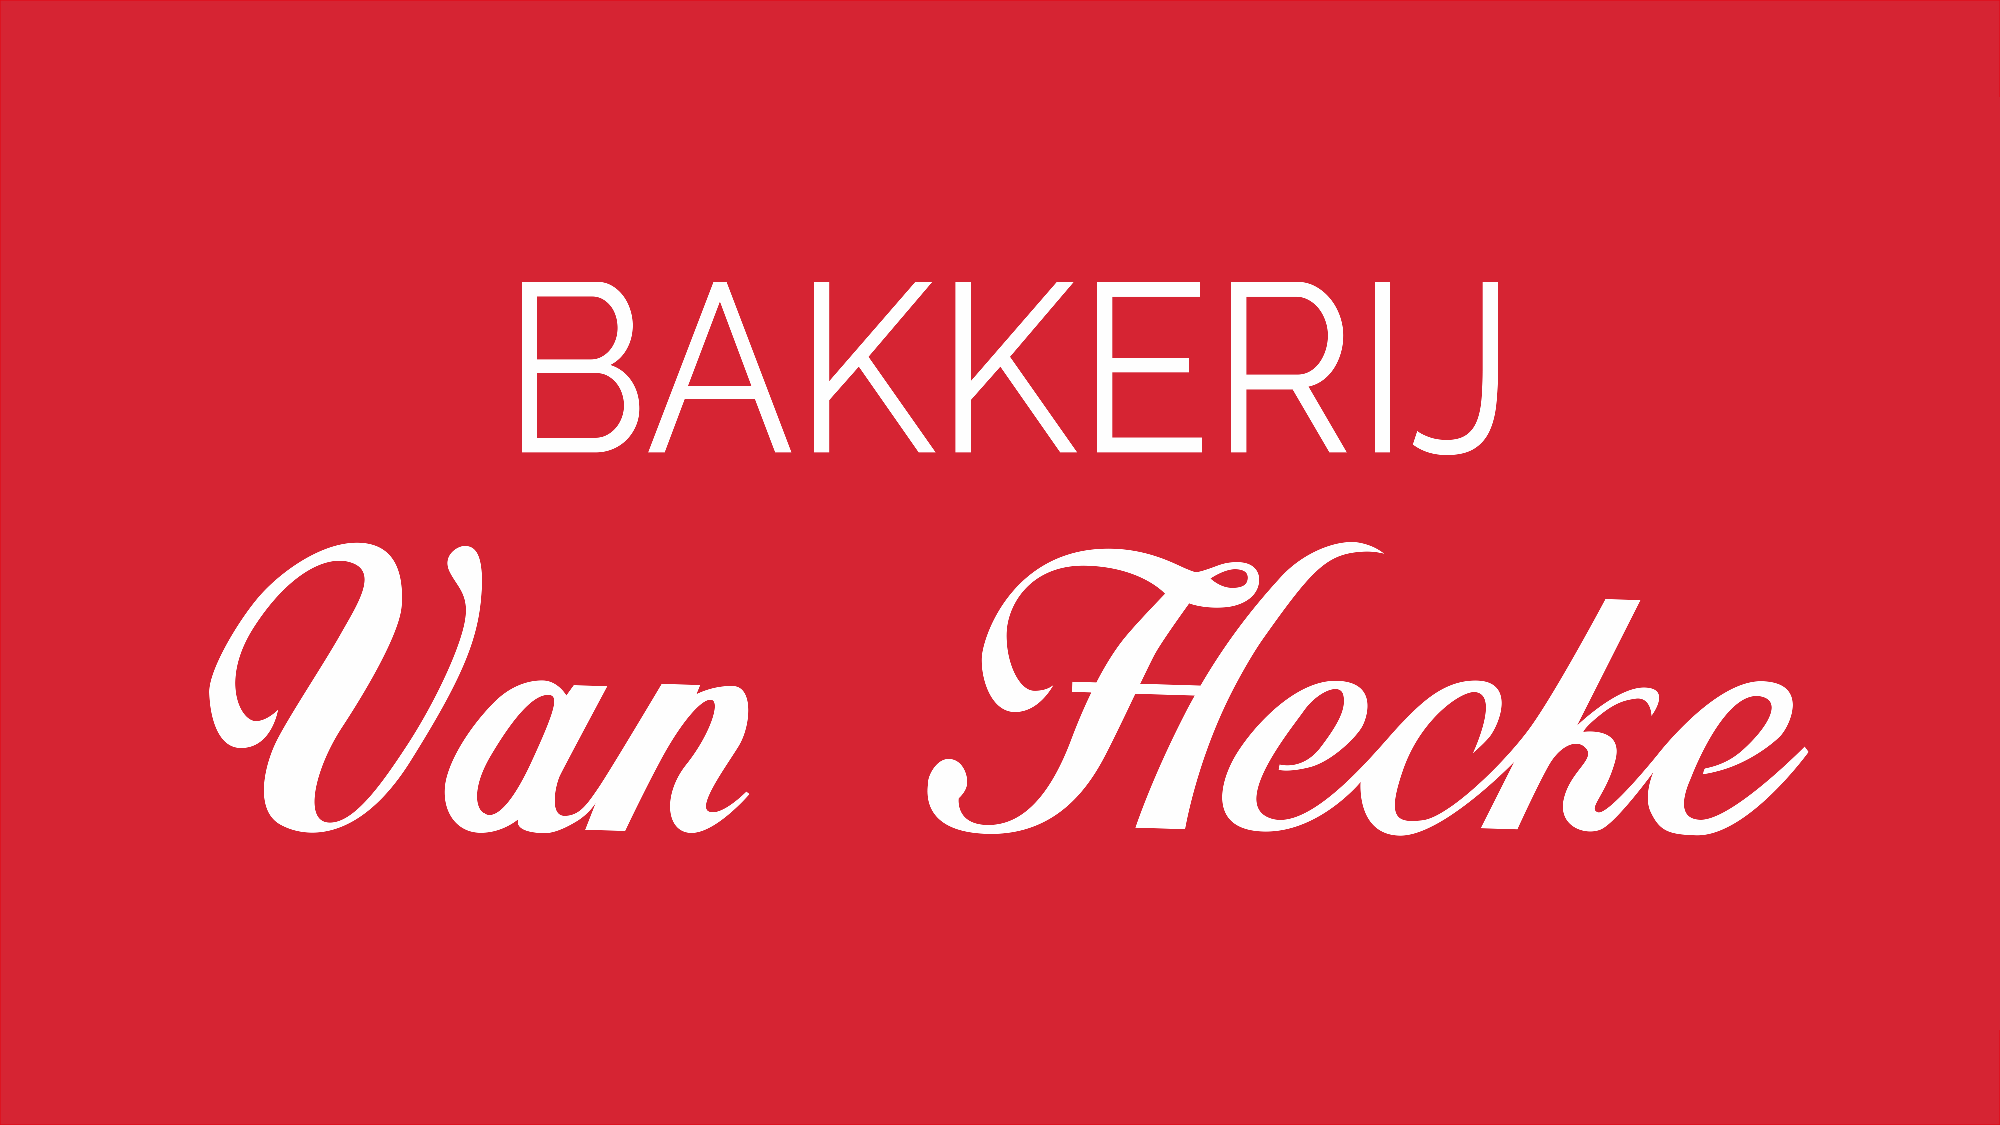 Bakkerij Van Hecke